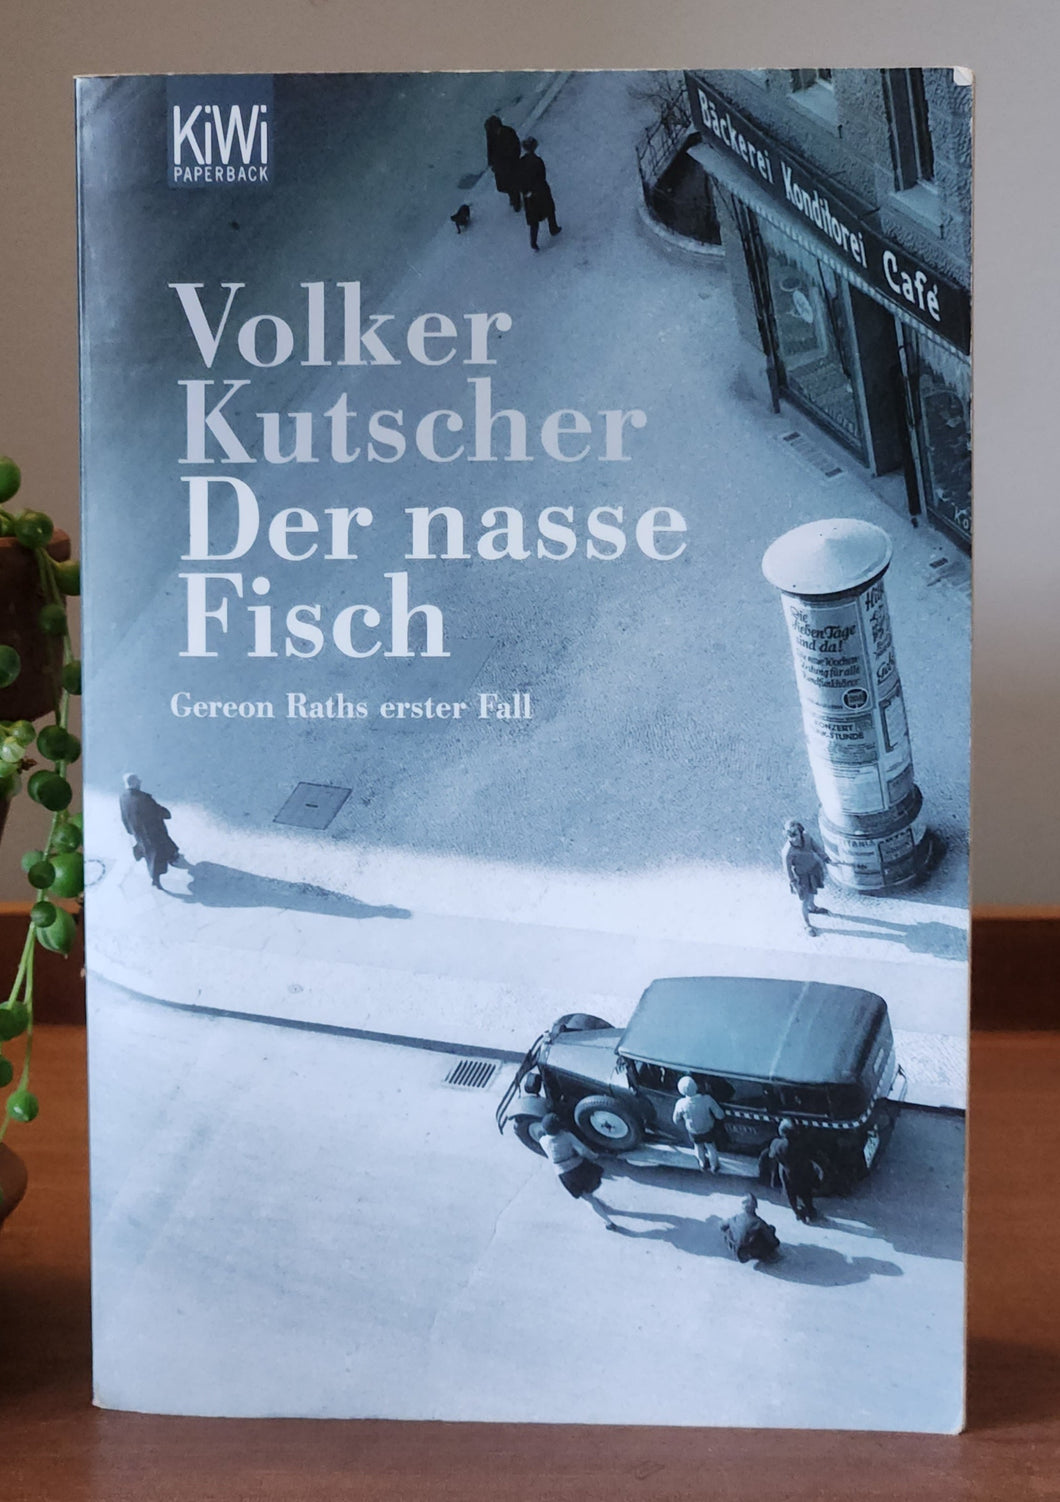 Der nasse Fisch by Volker Kutscher (German Language)